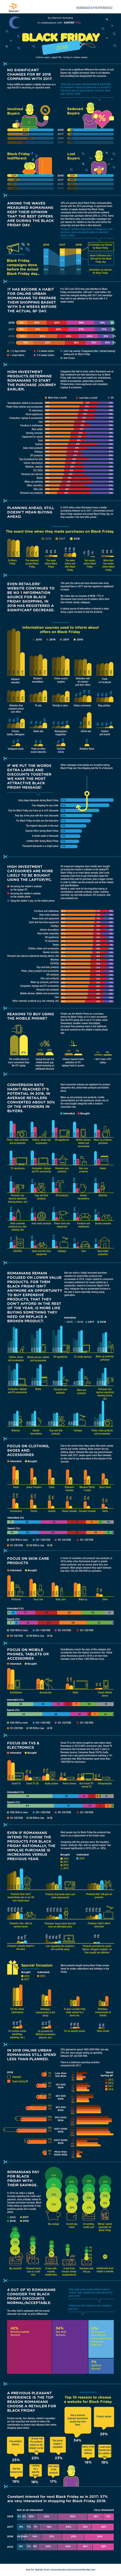 Jumătate dintre români se declară nemulțumiți de ofertele de Black Friday